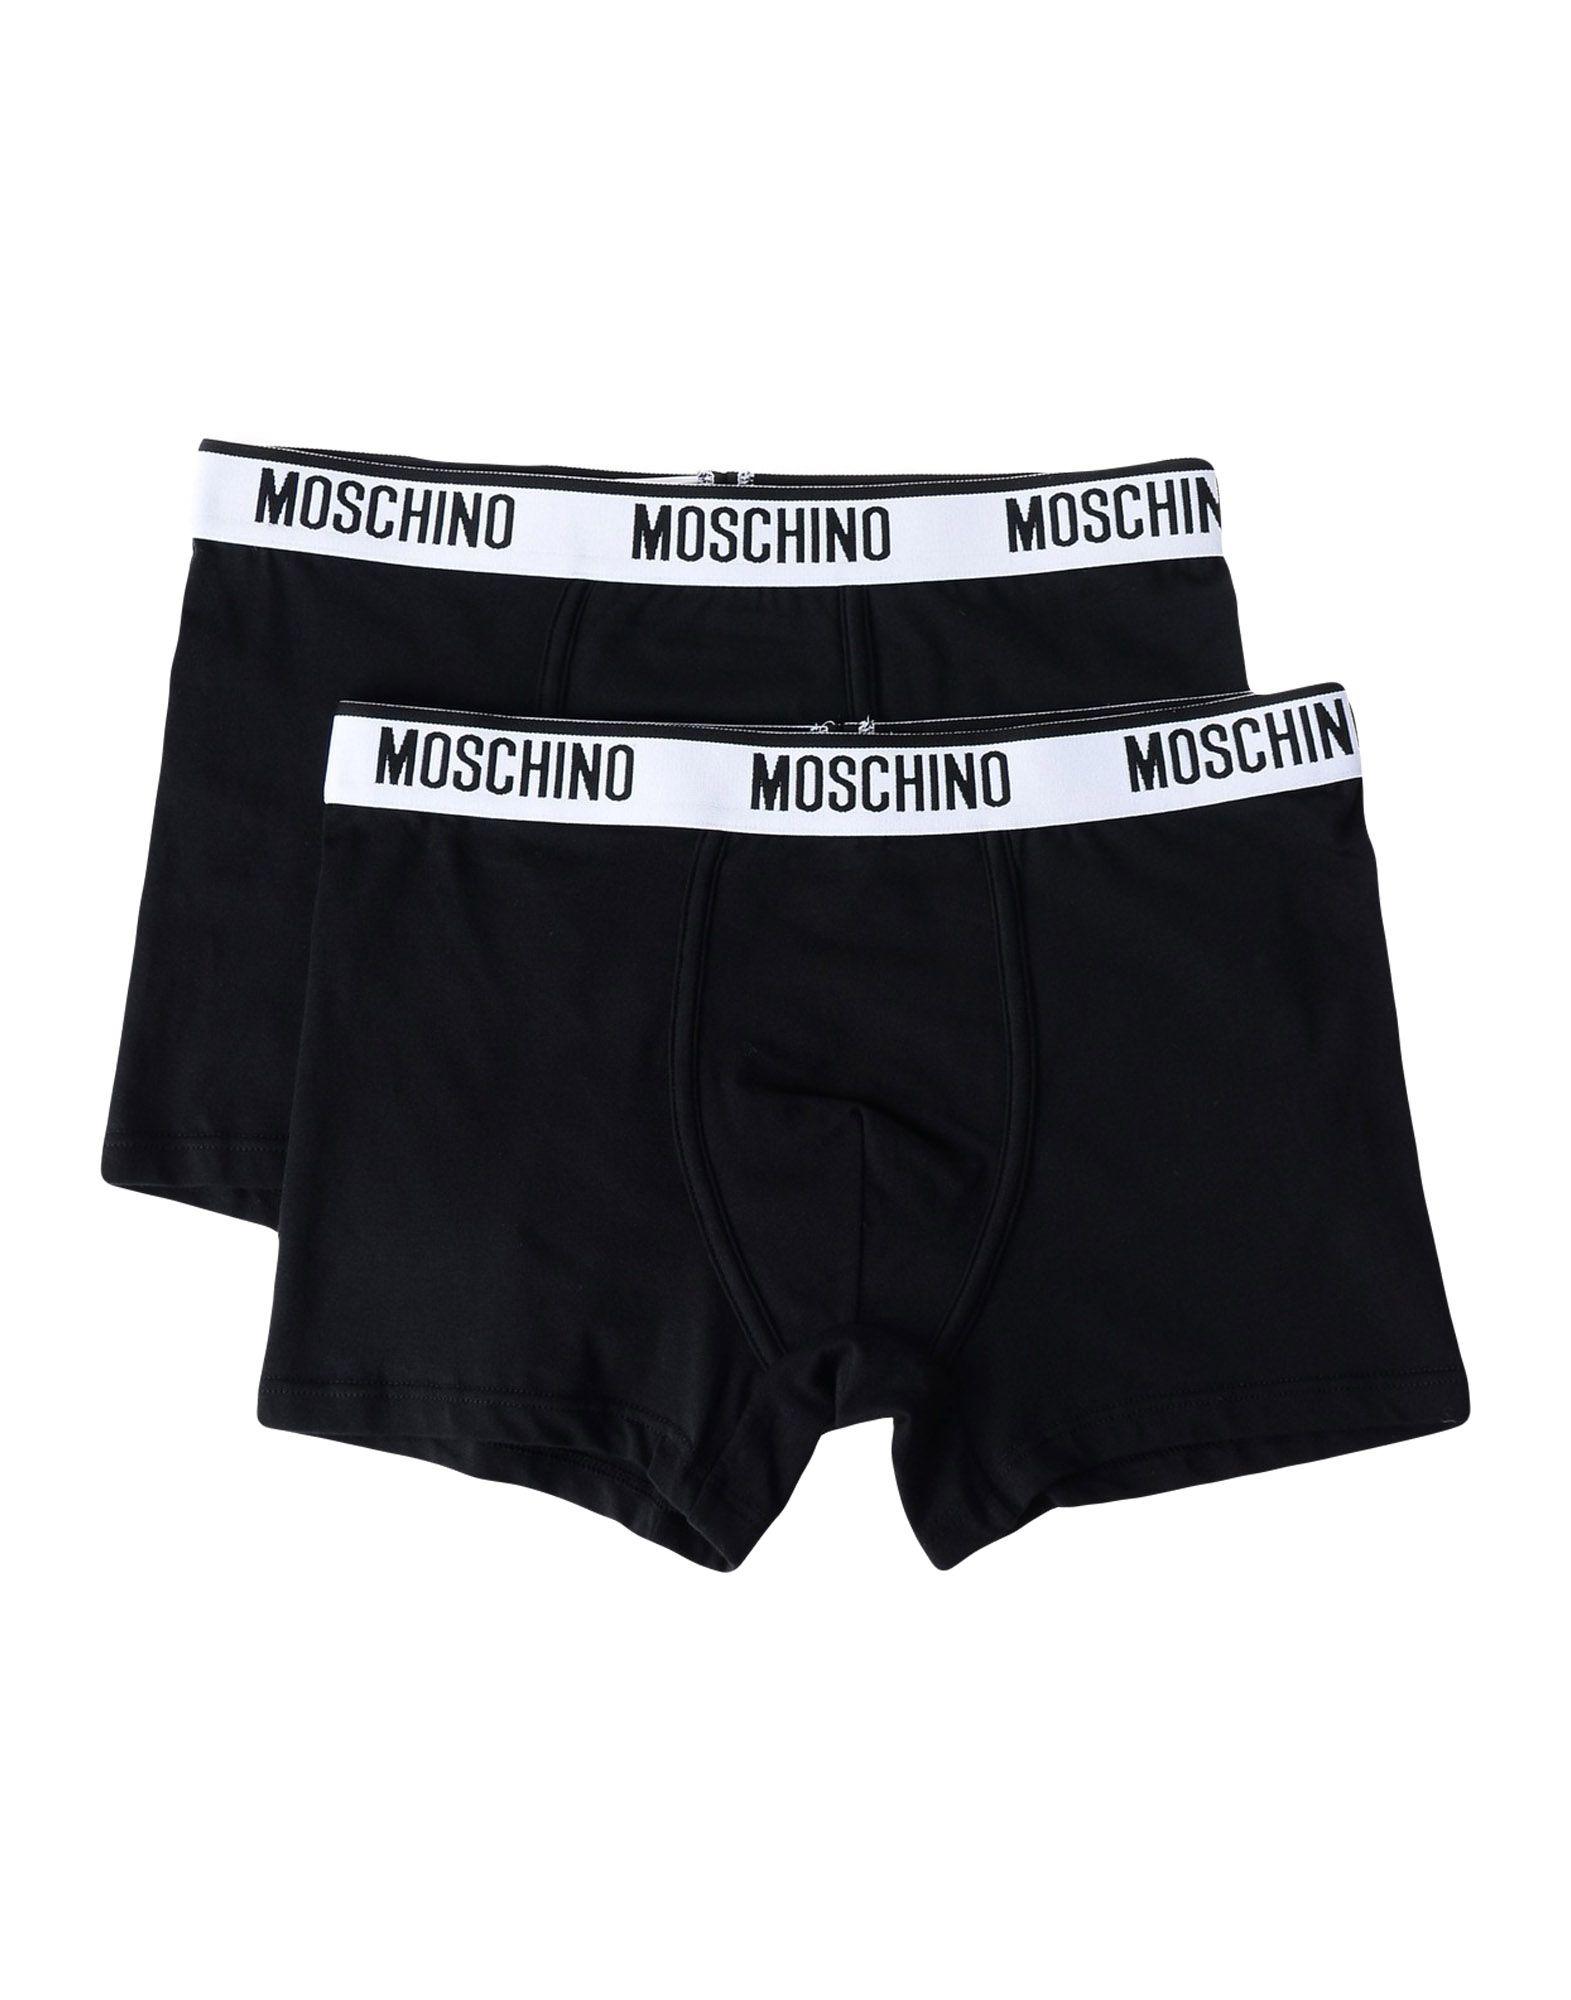 moschino underwear, OFF 77%,Best Deals 